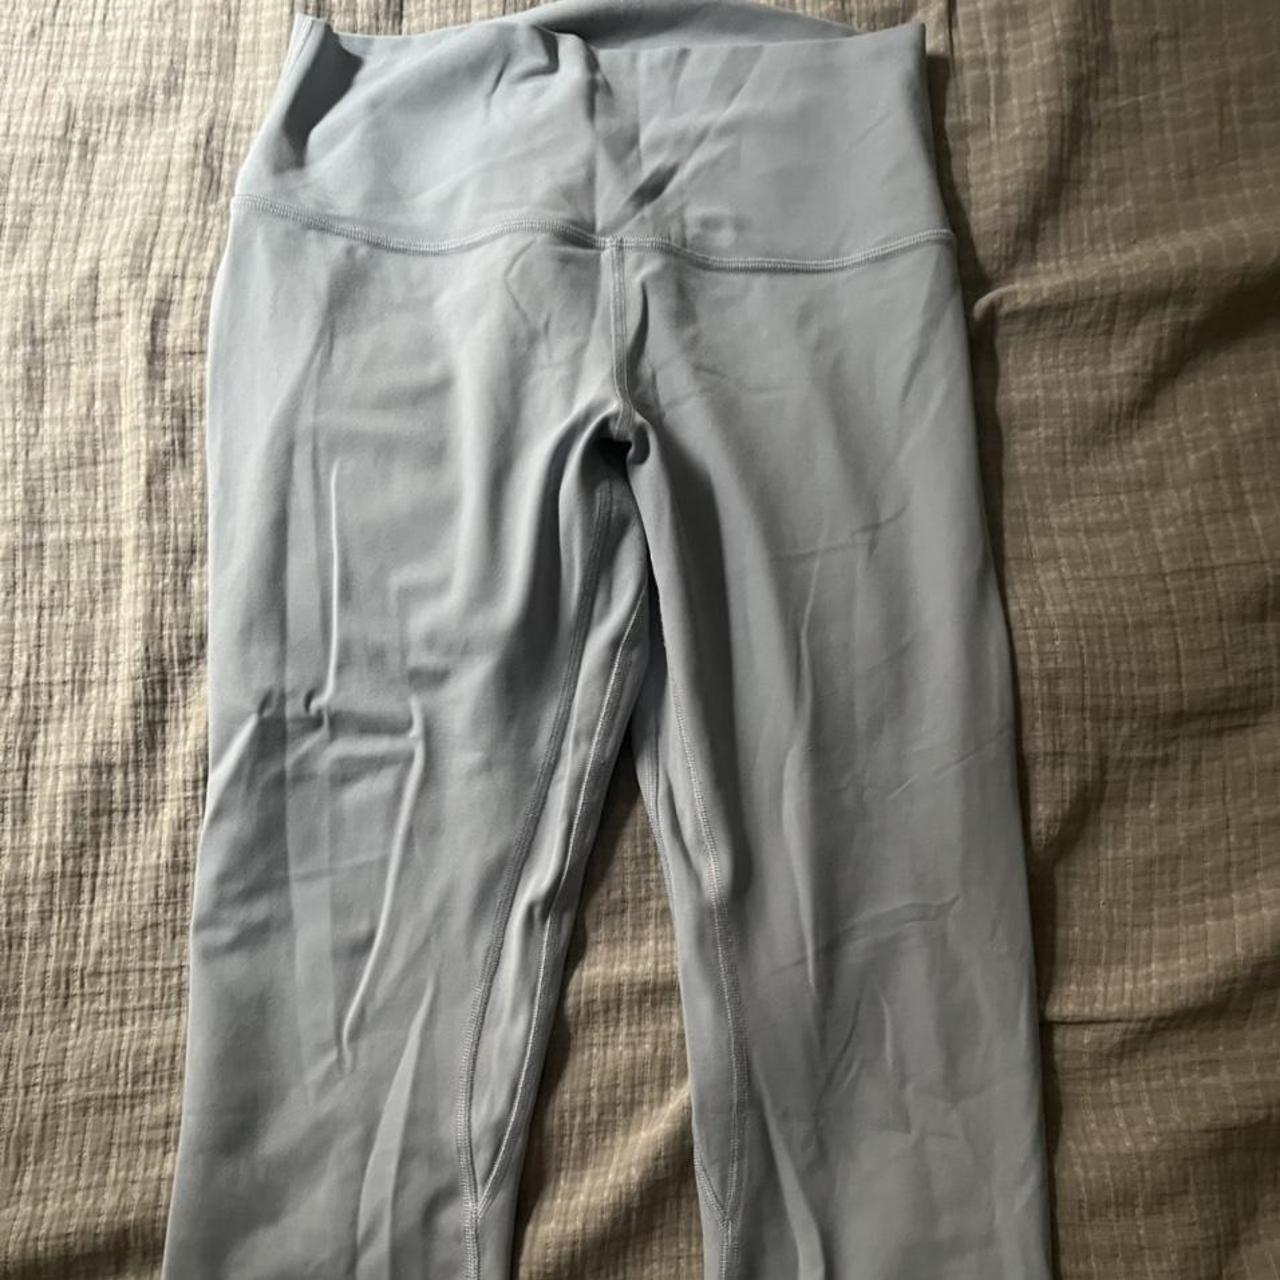 Light blue/greyish lululemon leggings 25” I'm not - Depop